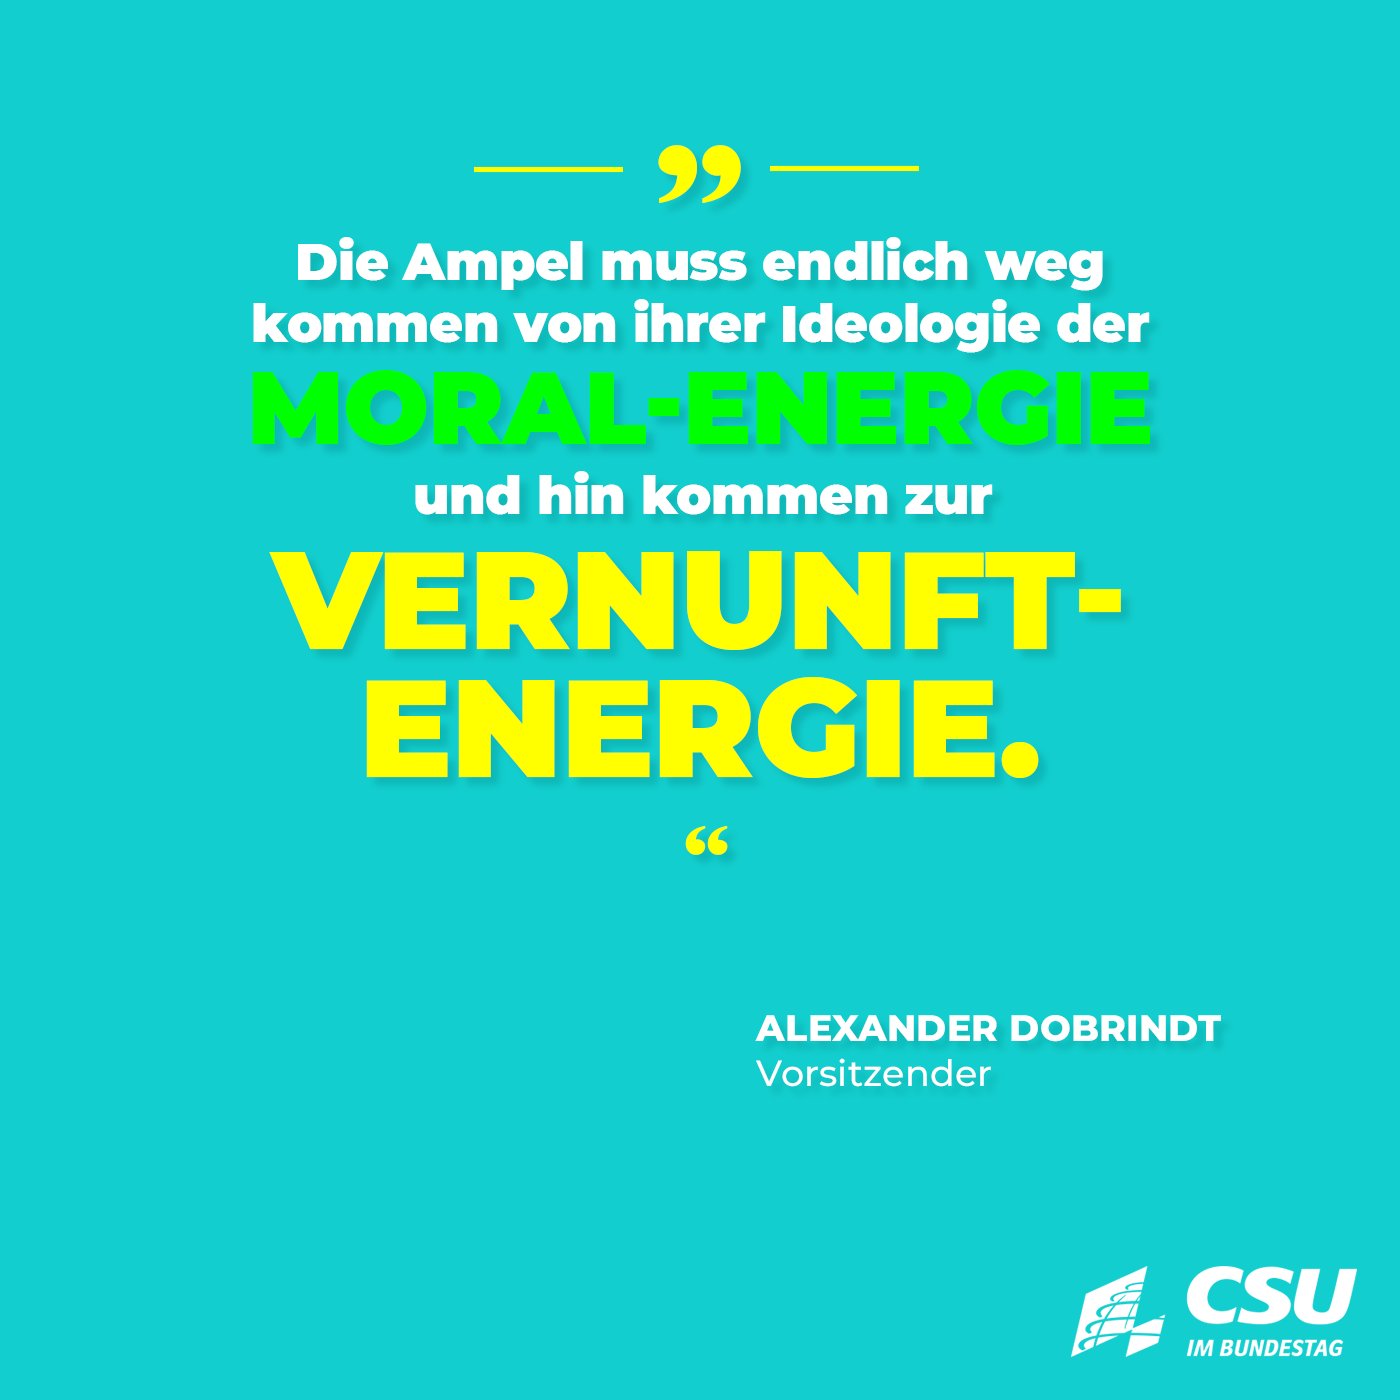 CSU im Bundestag on X: Die Ampel muss jetzt dringenden